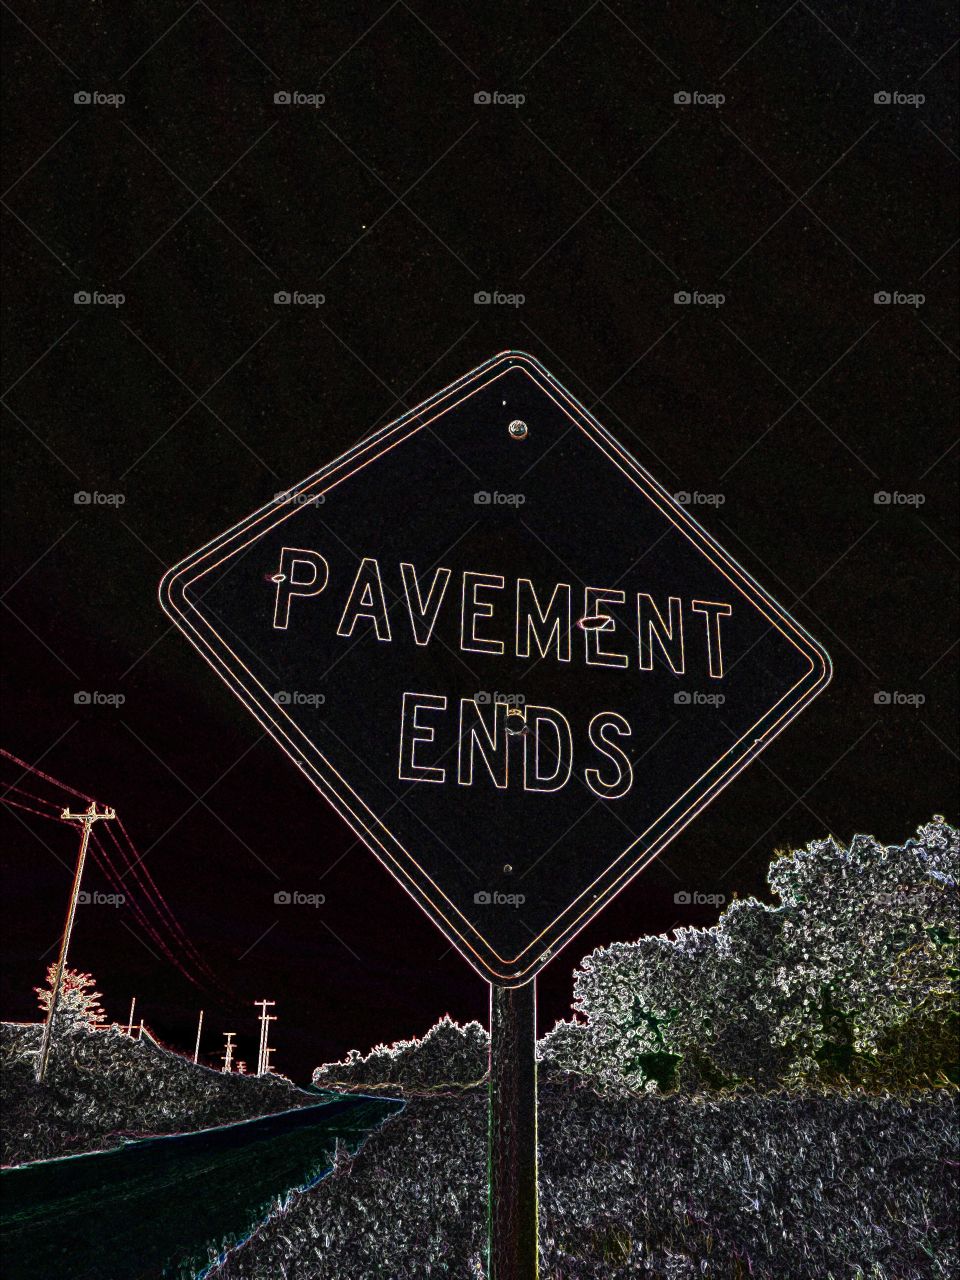 Pavement Ends stylized